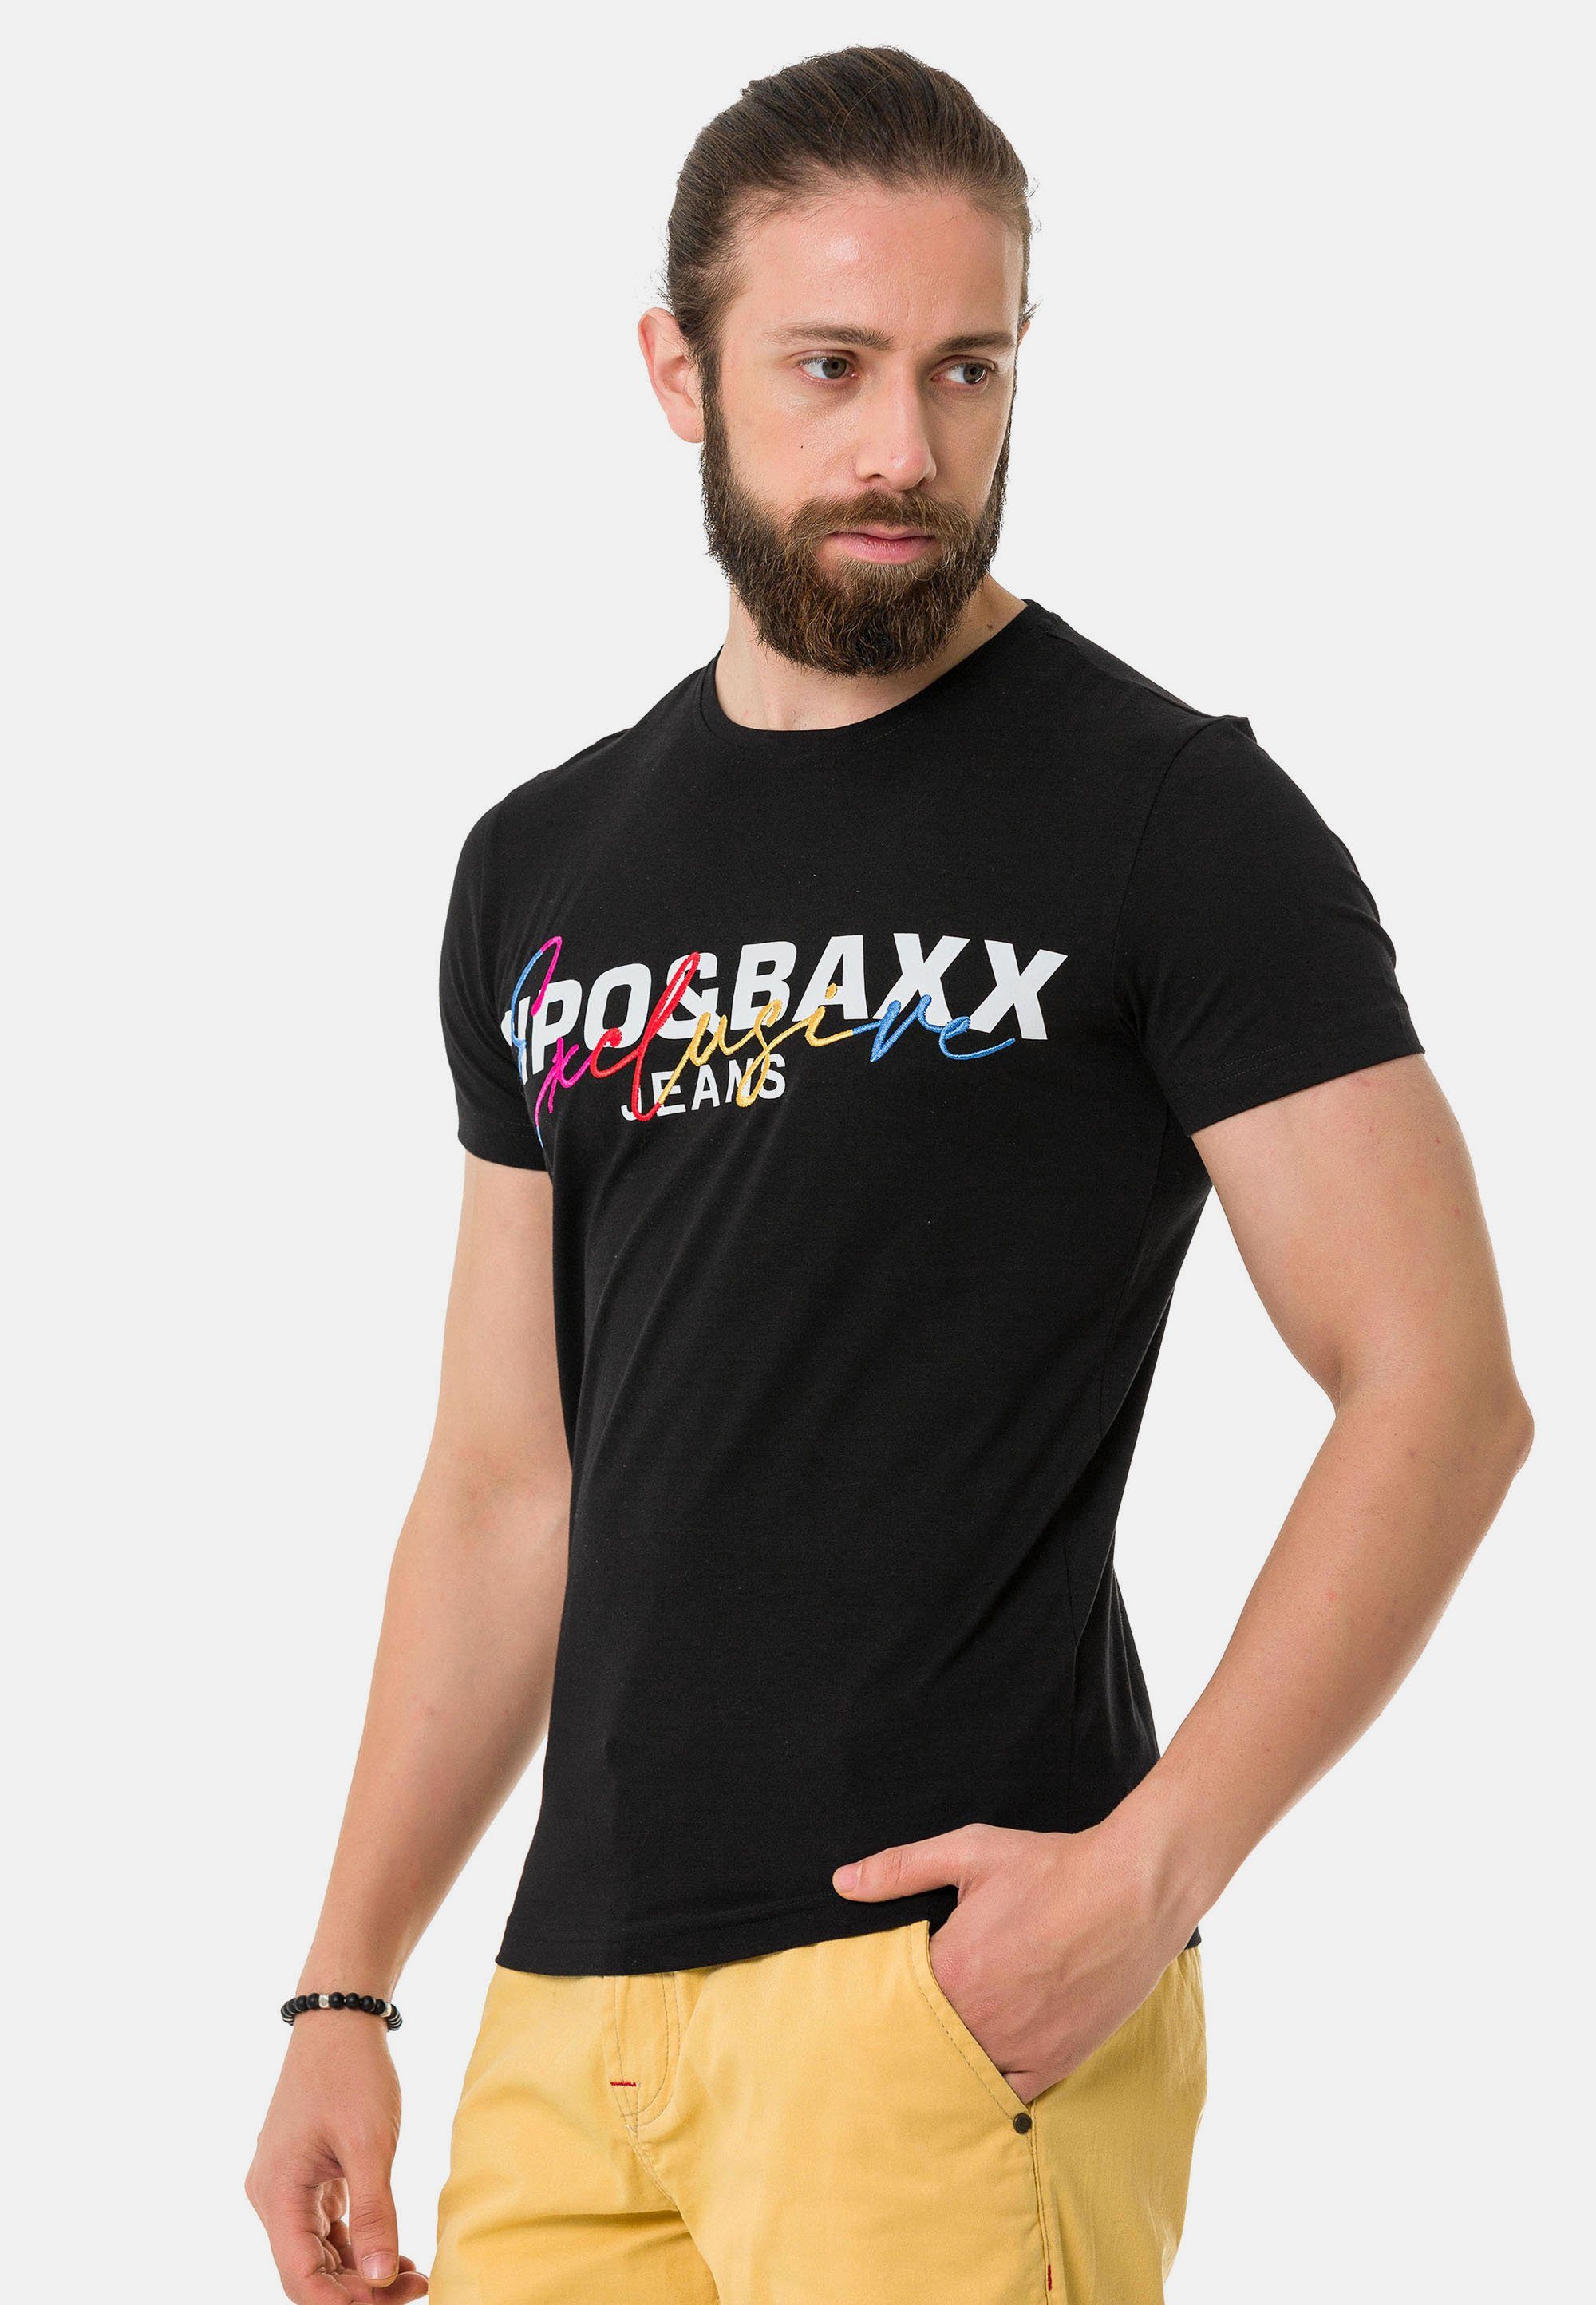 & T-Shirt Cipo Baxx schwarz Markenprint mit